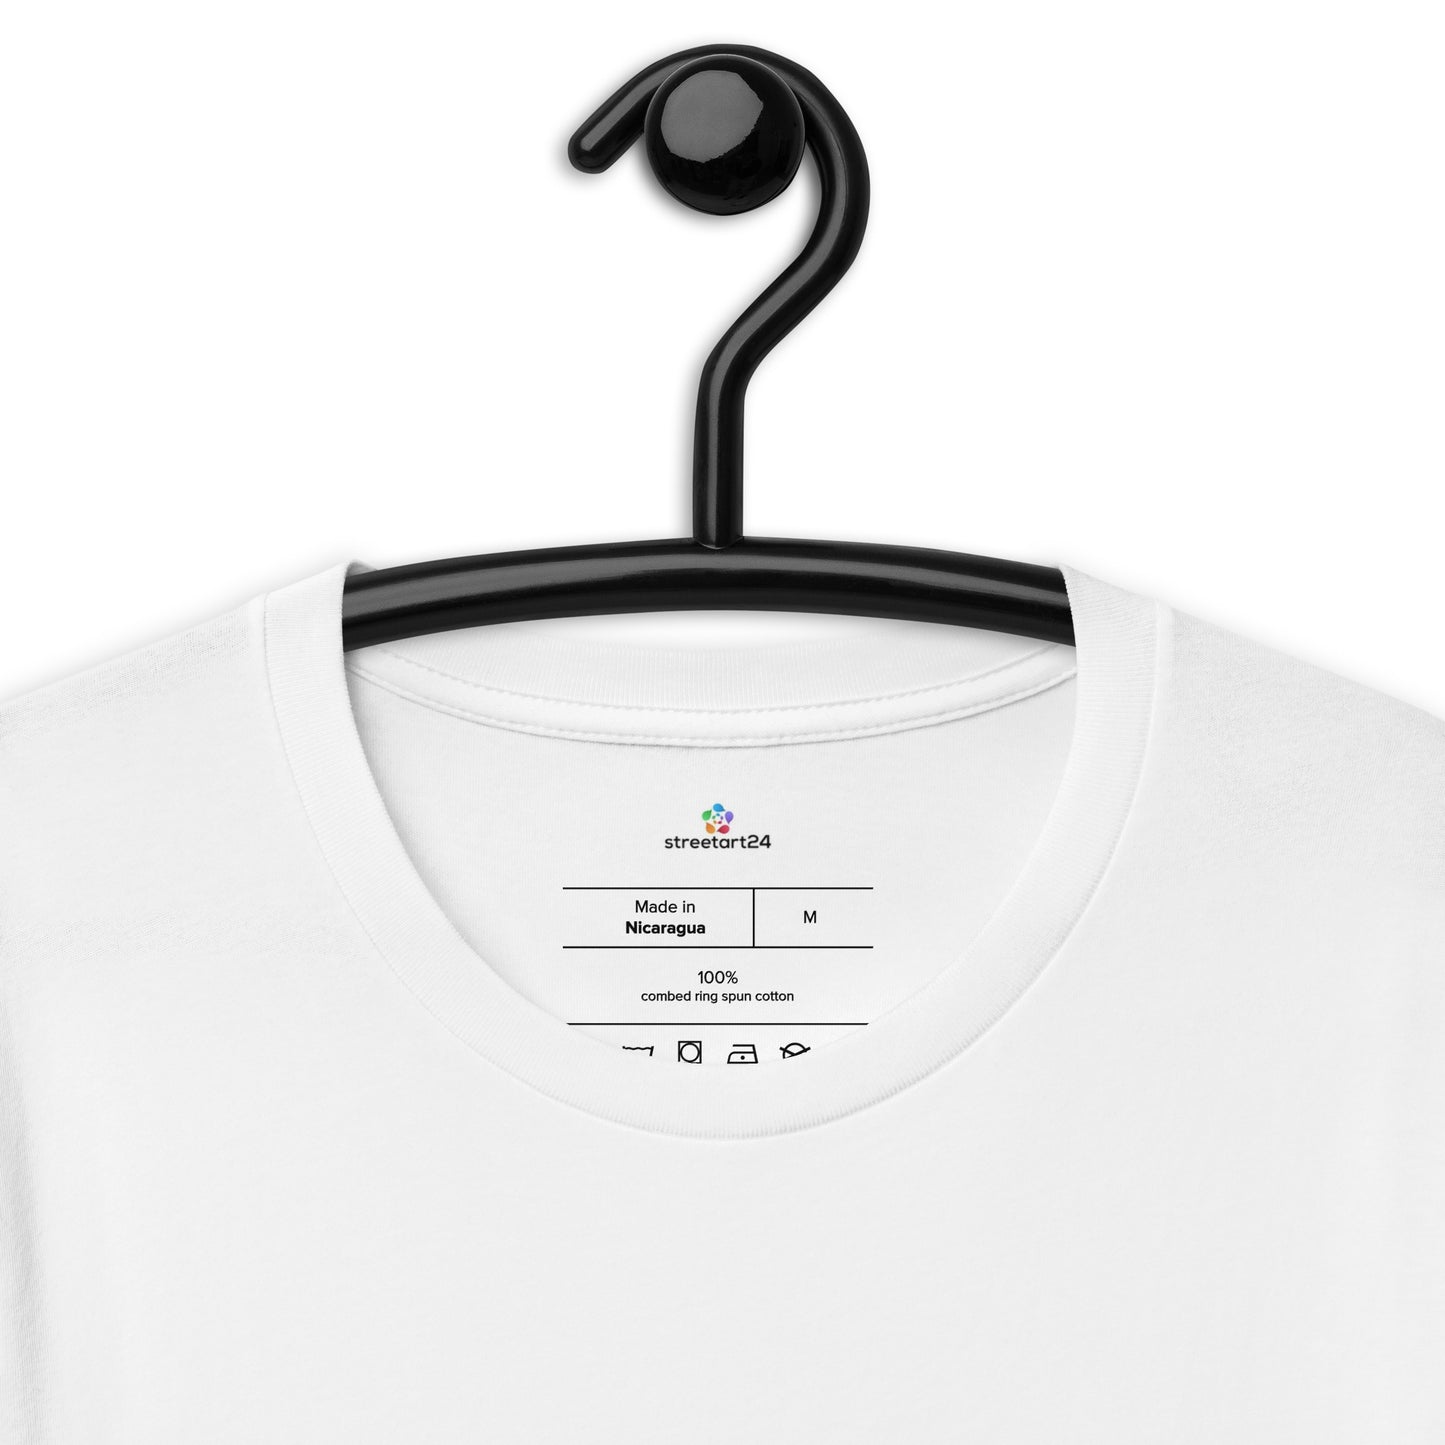 Kurzärmliges Unisex-T-Shirt "Eine Straße in Paris"